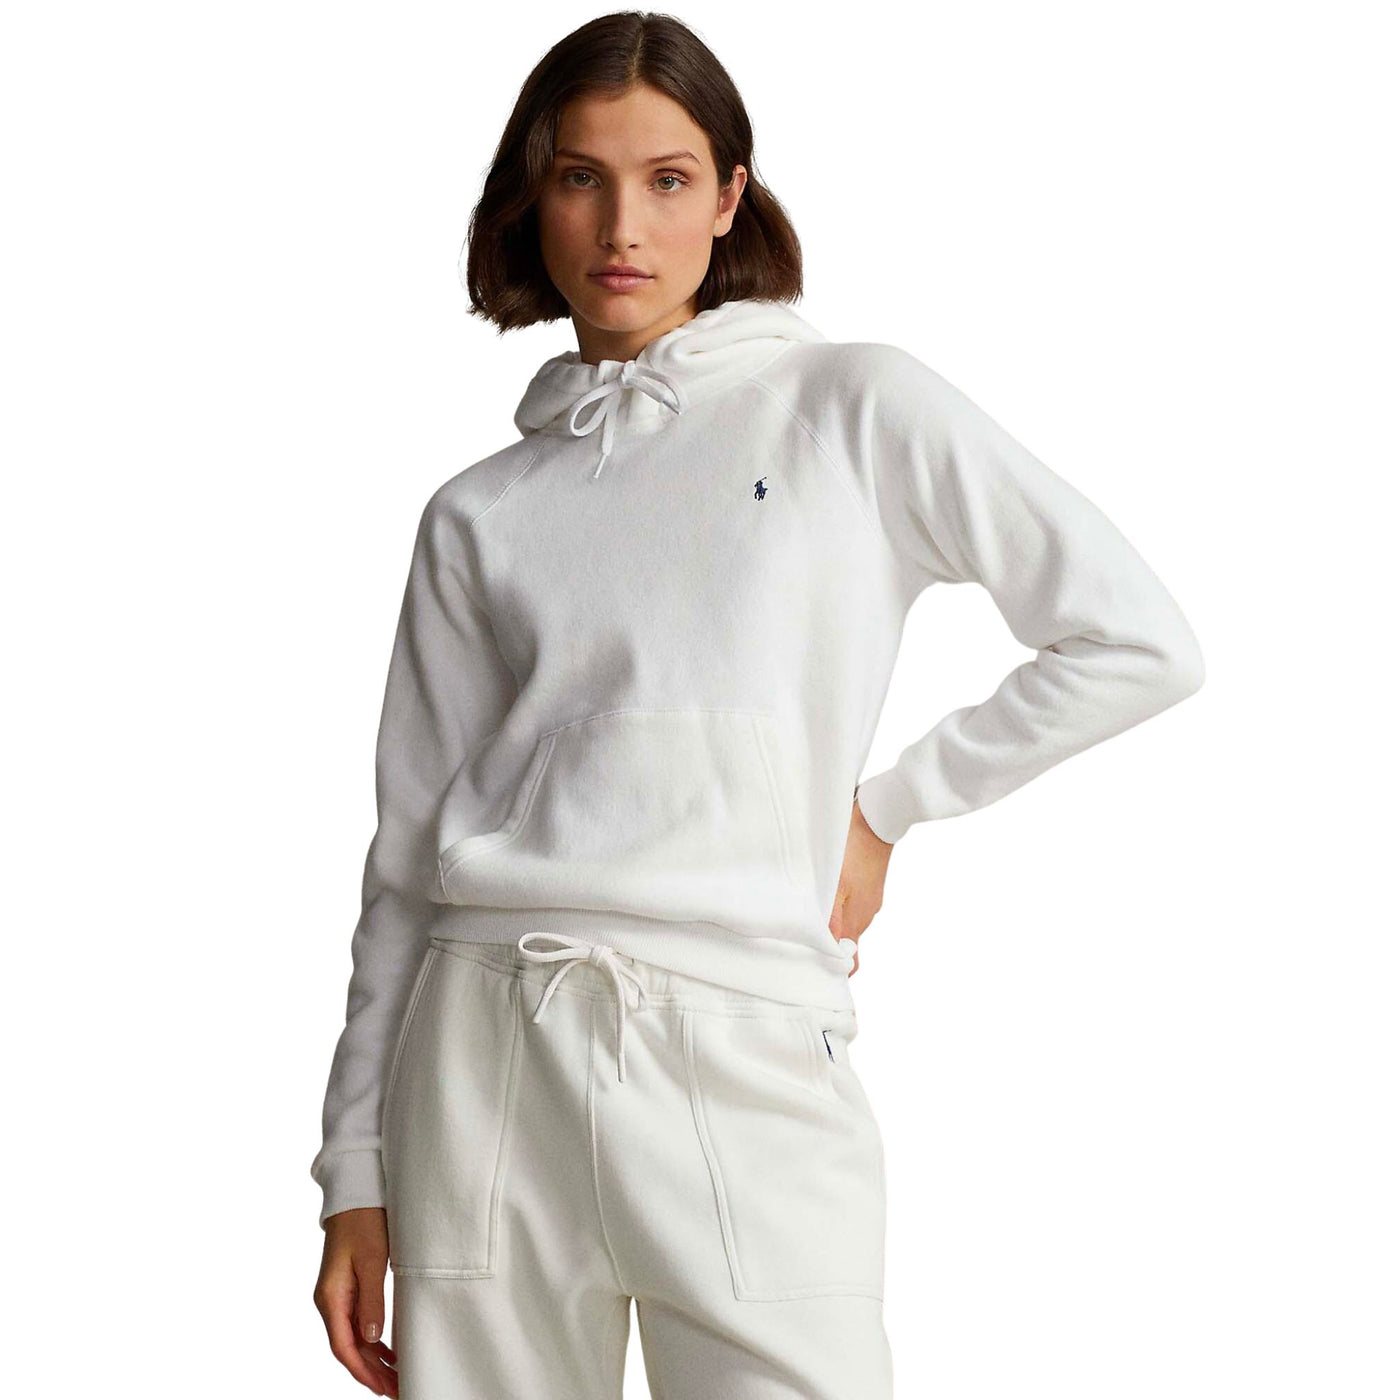 Women's White Hooded Sweatshirt